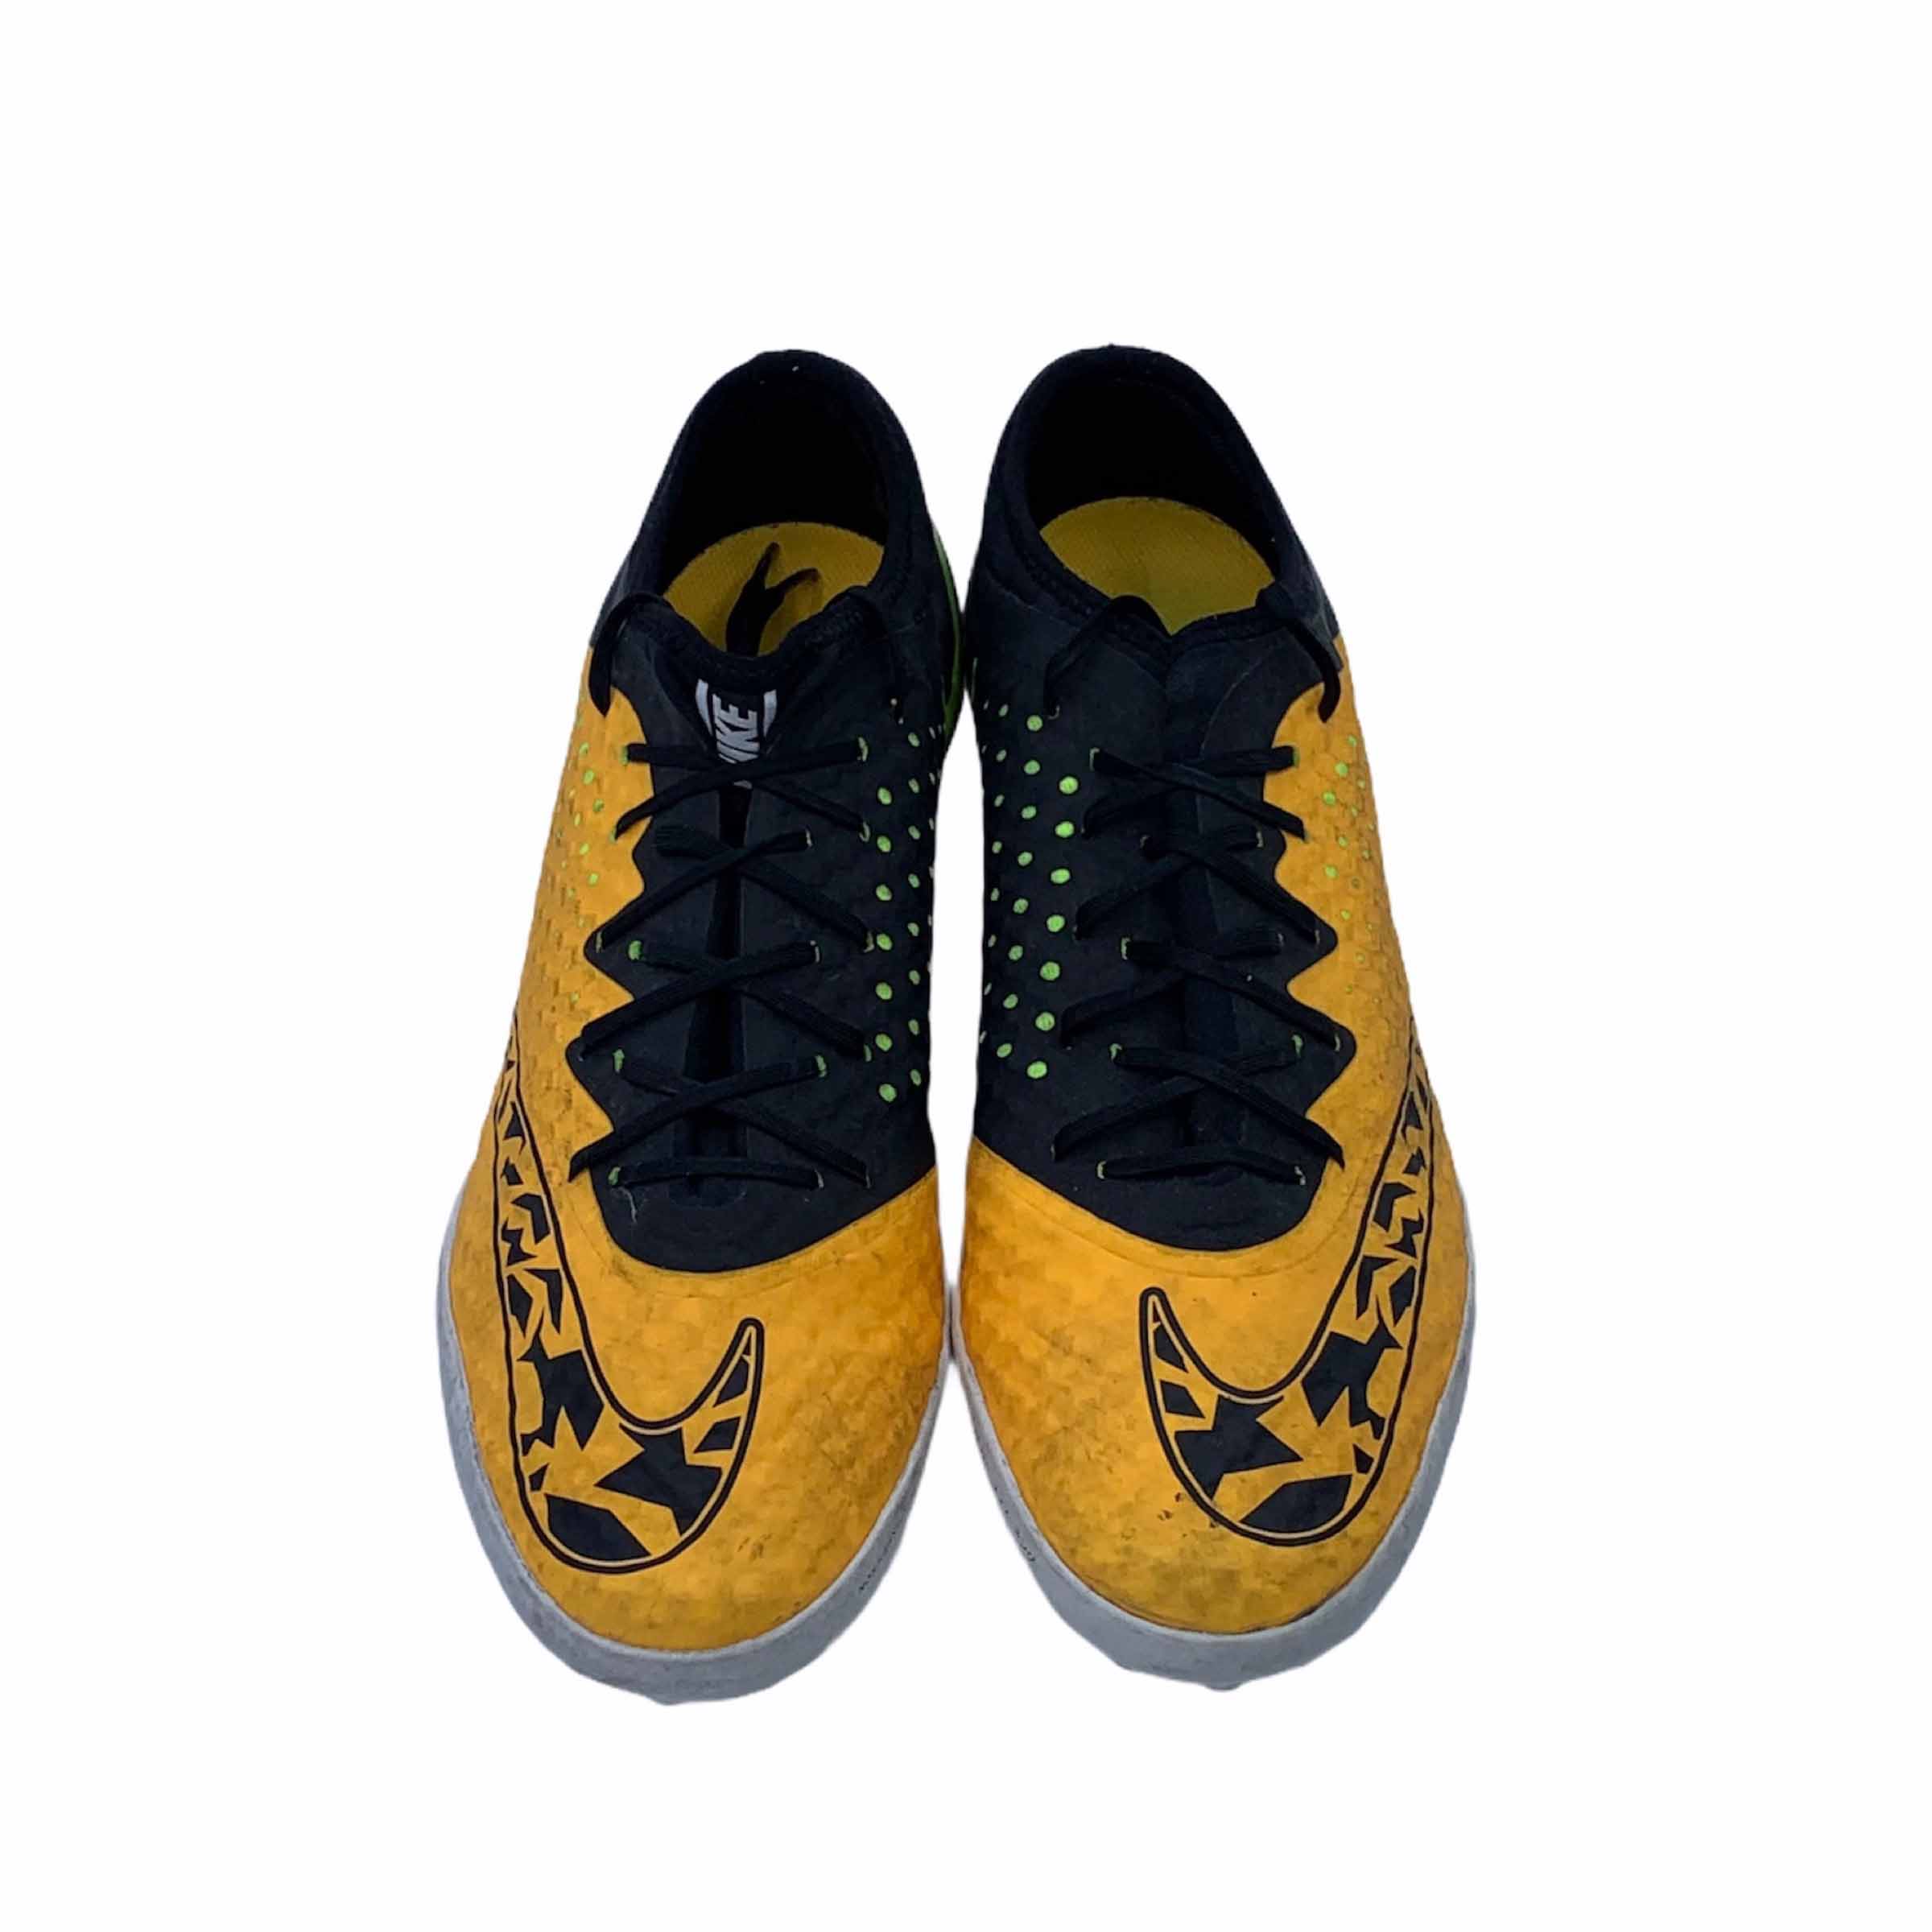 [Nike] Orange Black Futsal Shoes - Size 255